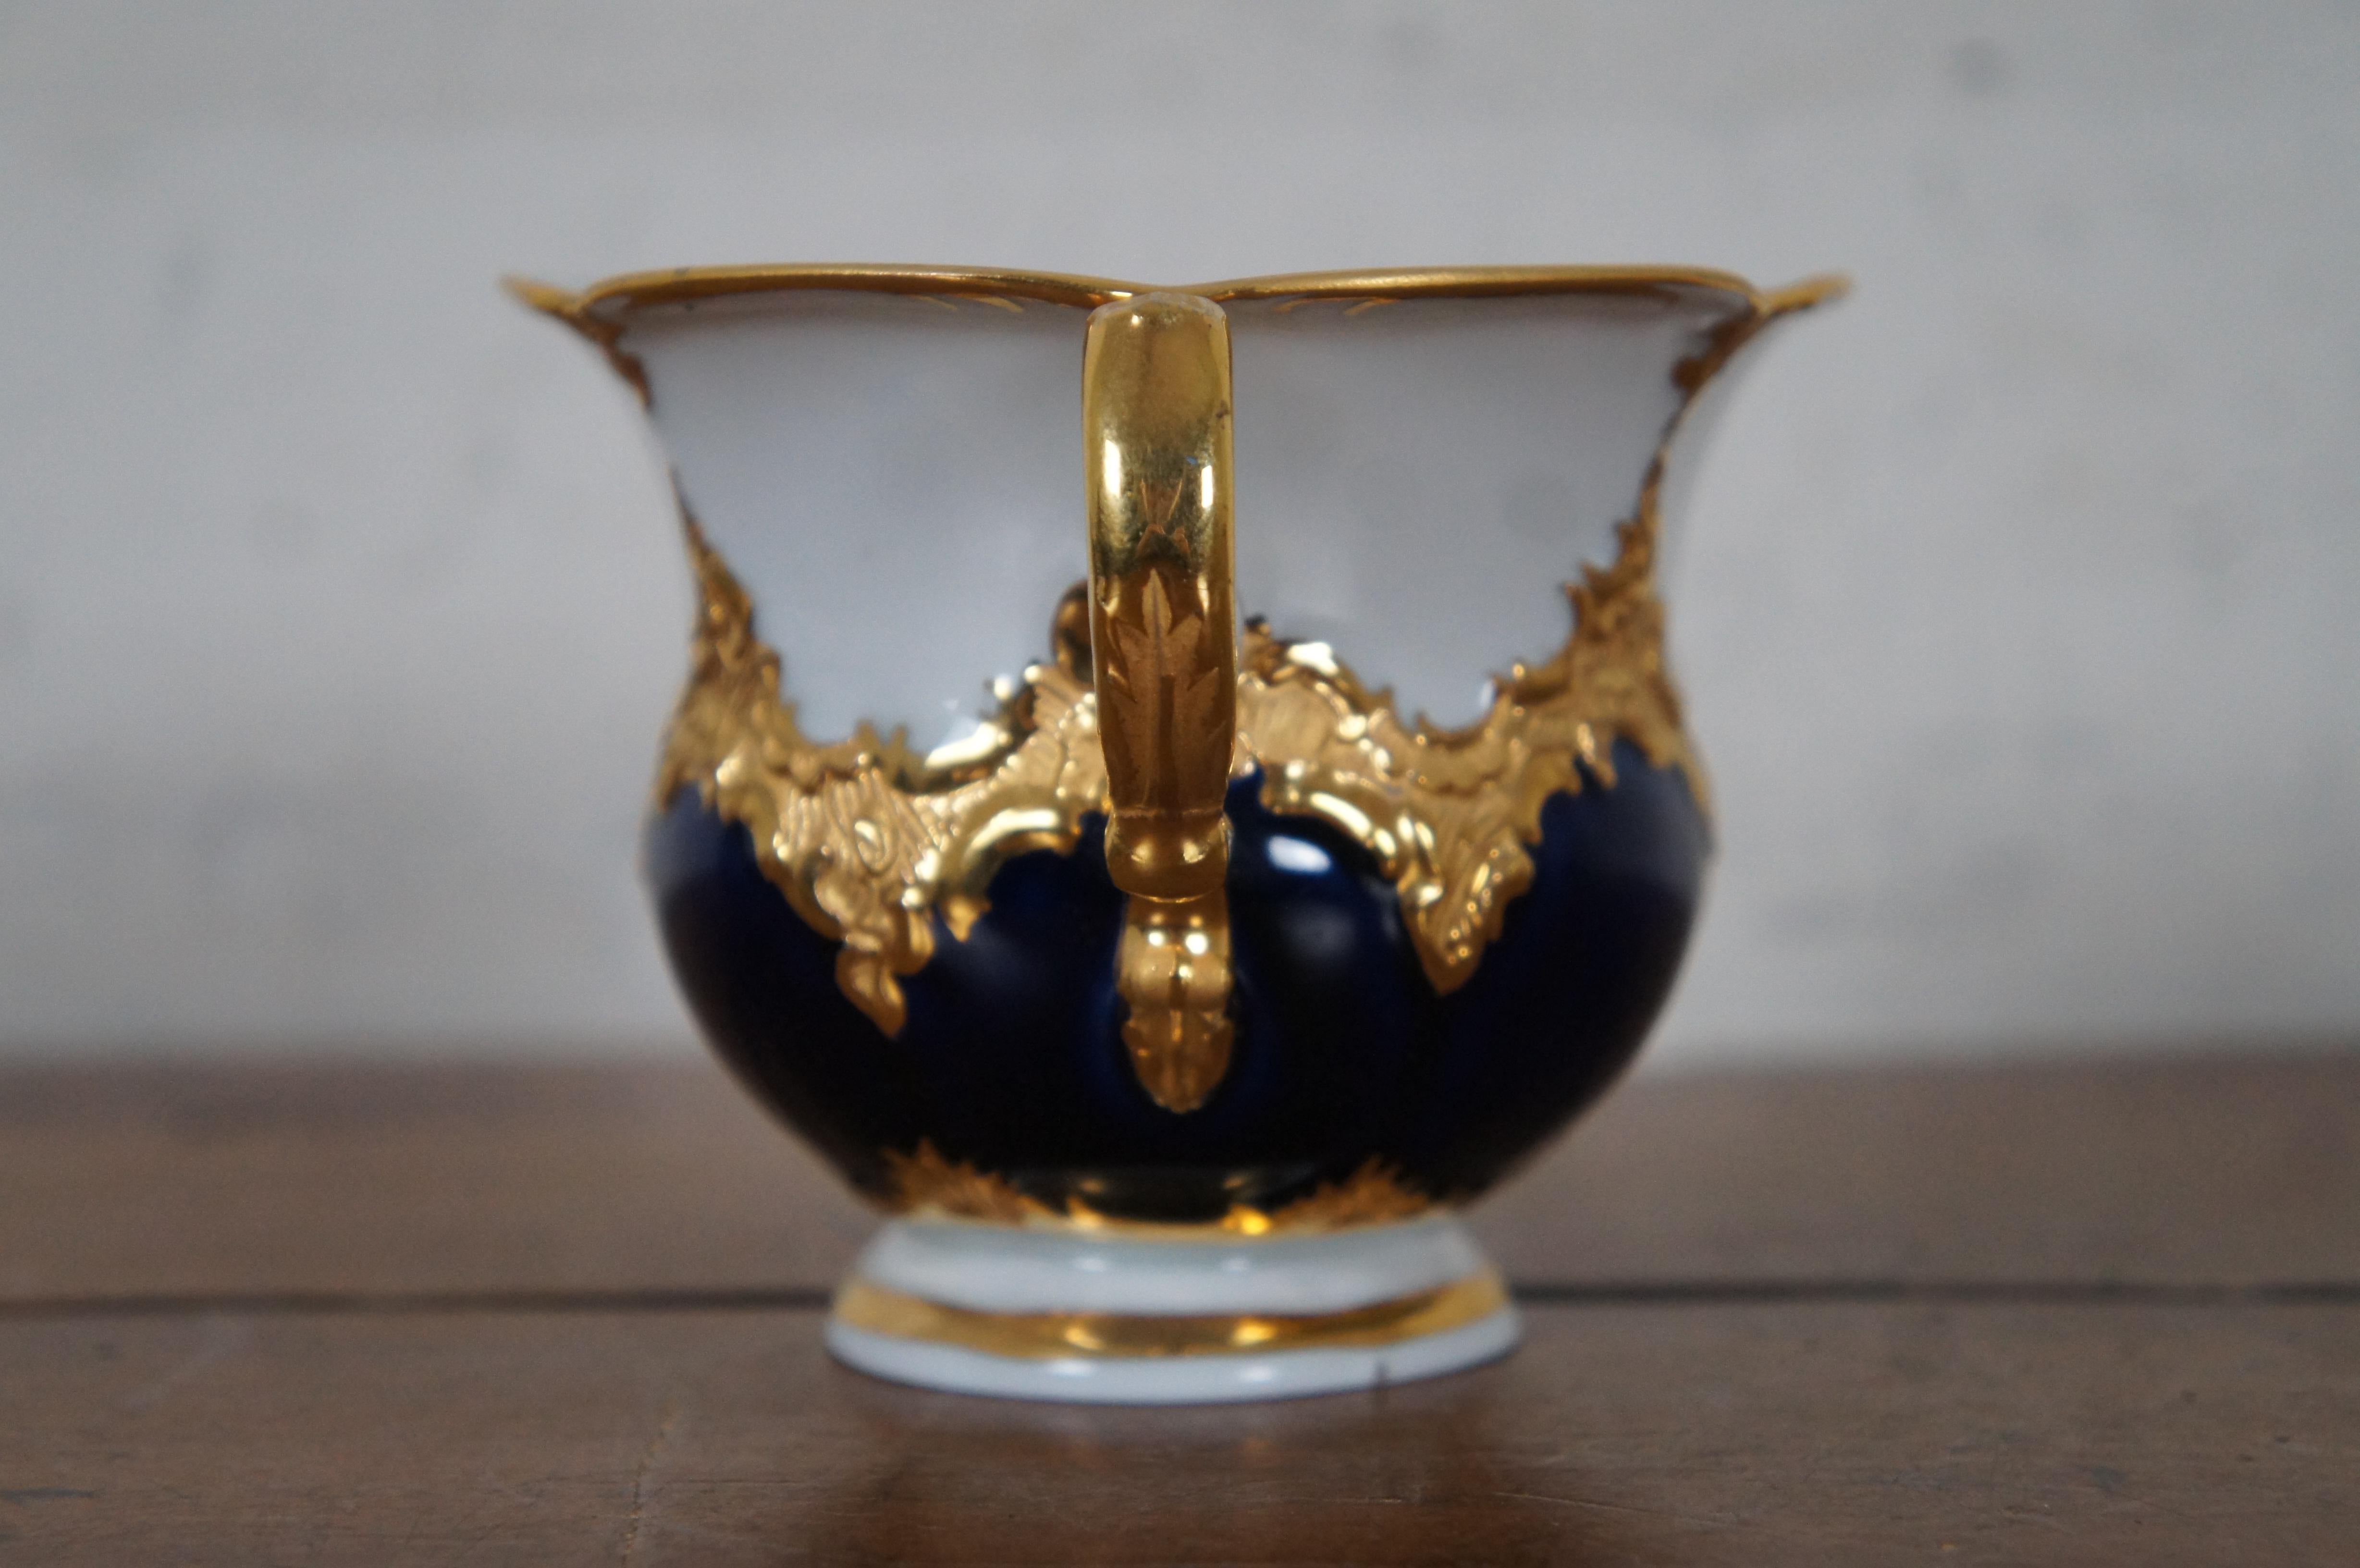 Rare Vintage Meissen Mocha B-Form Porcelain Teacup & Saucer Cobalt Blue & Gold 3